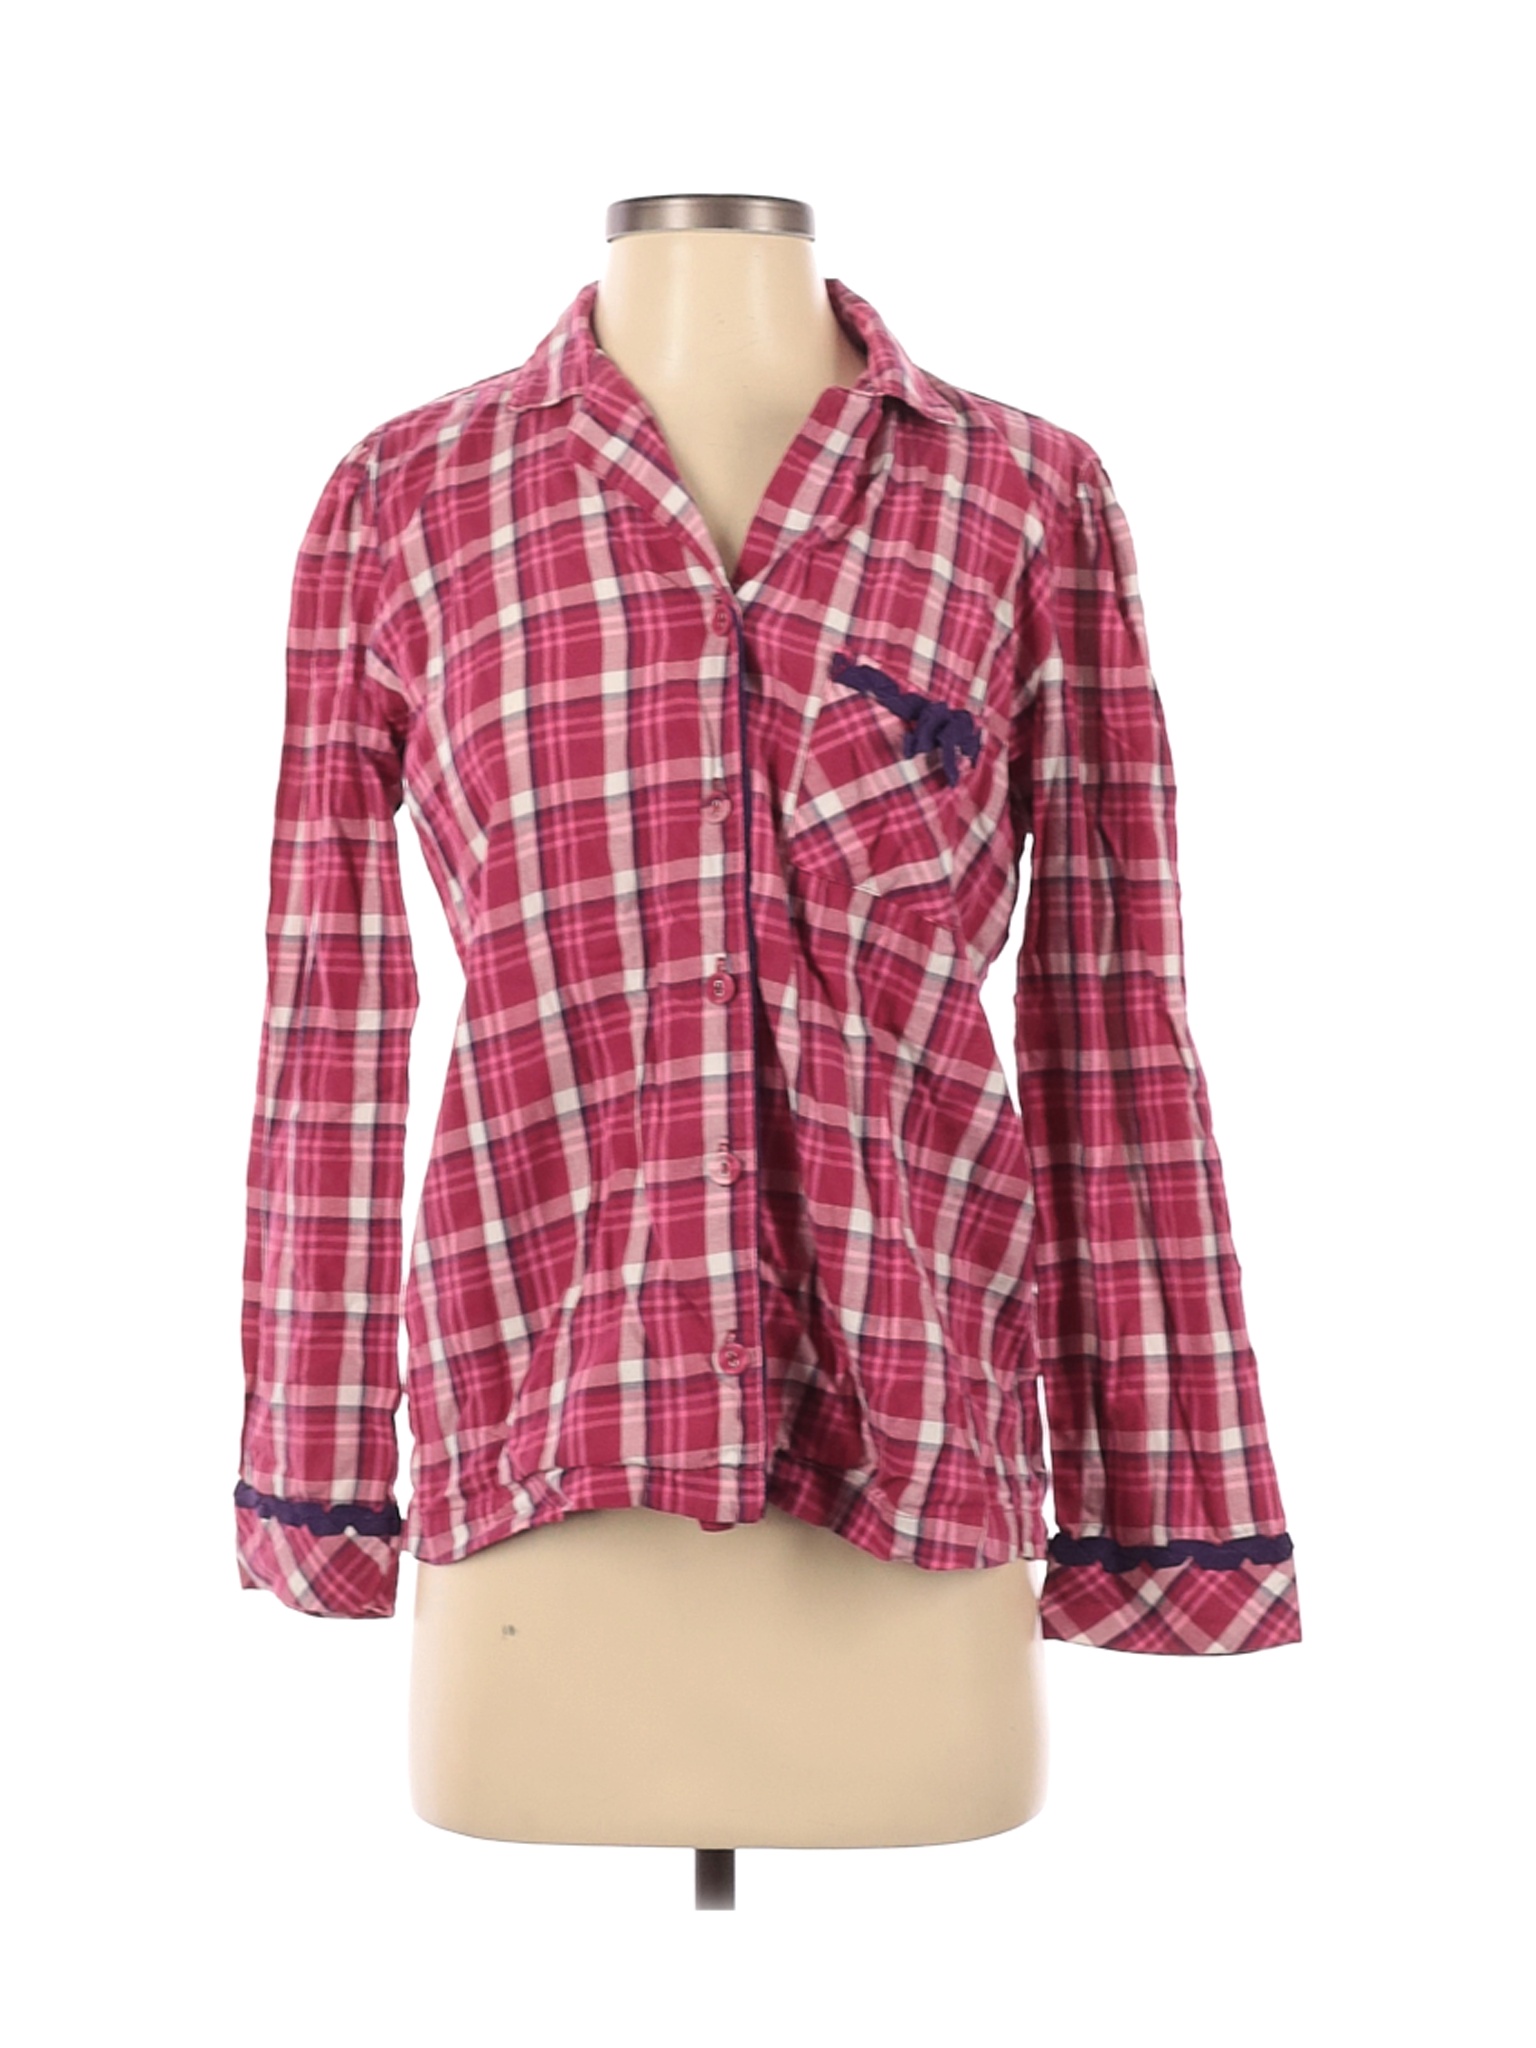 Victoria's Secret Women Pink Long Sleeve Button-Down Shirt S | eBay